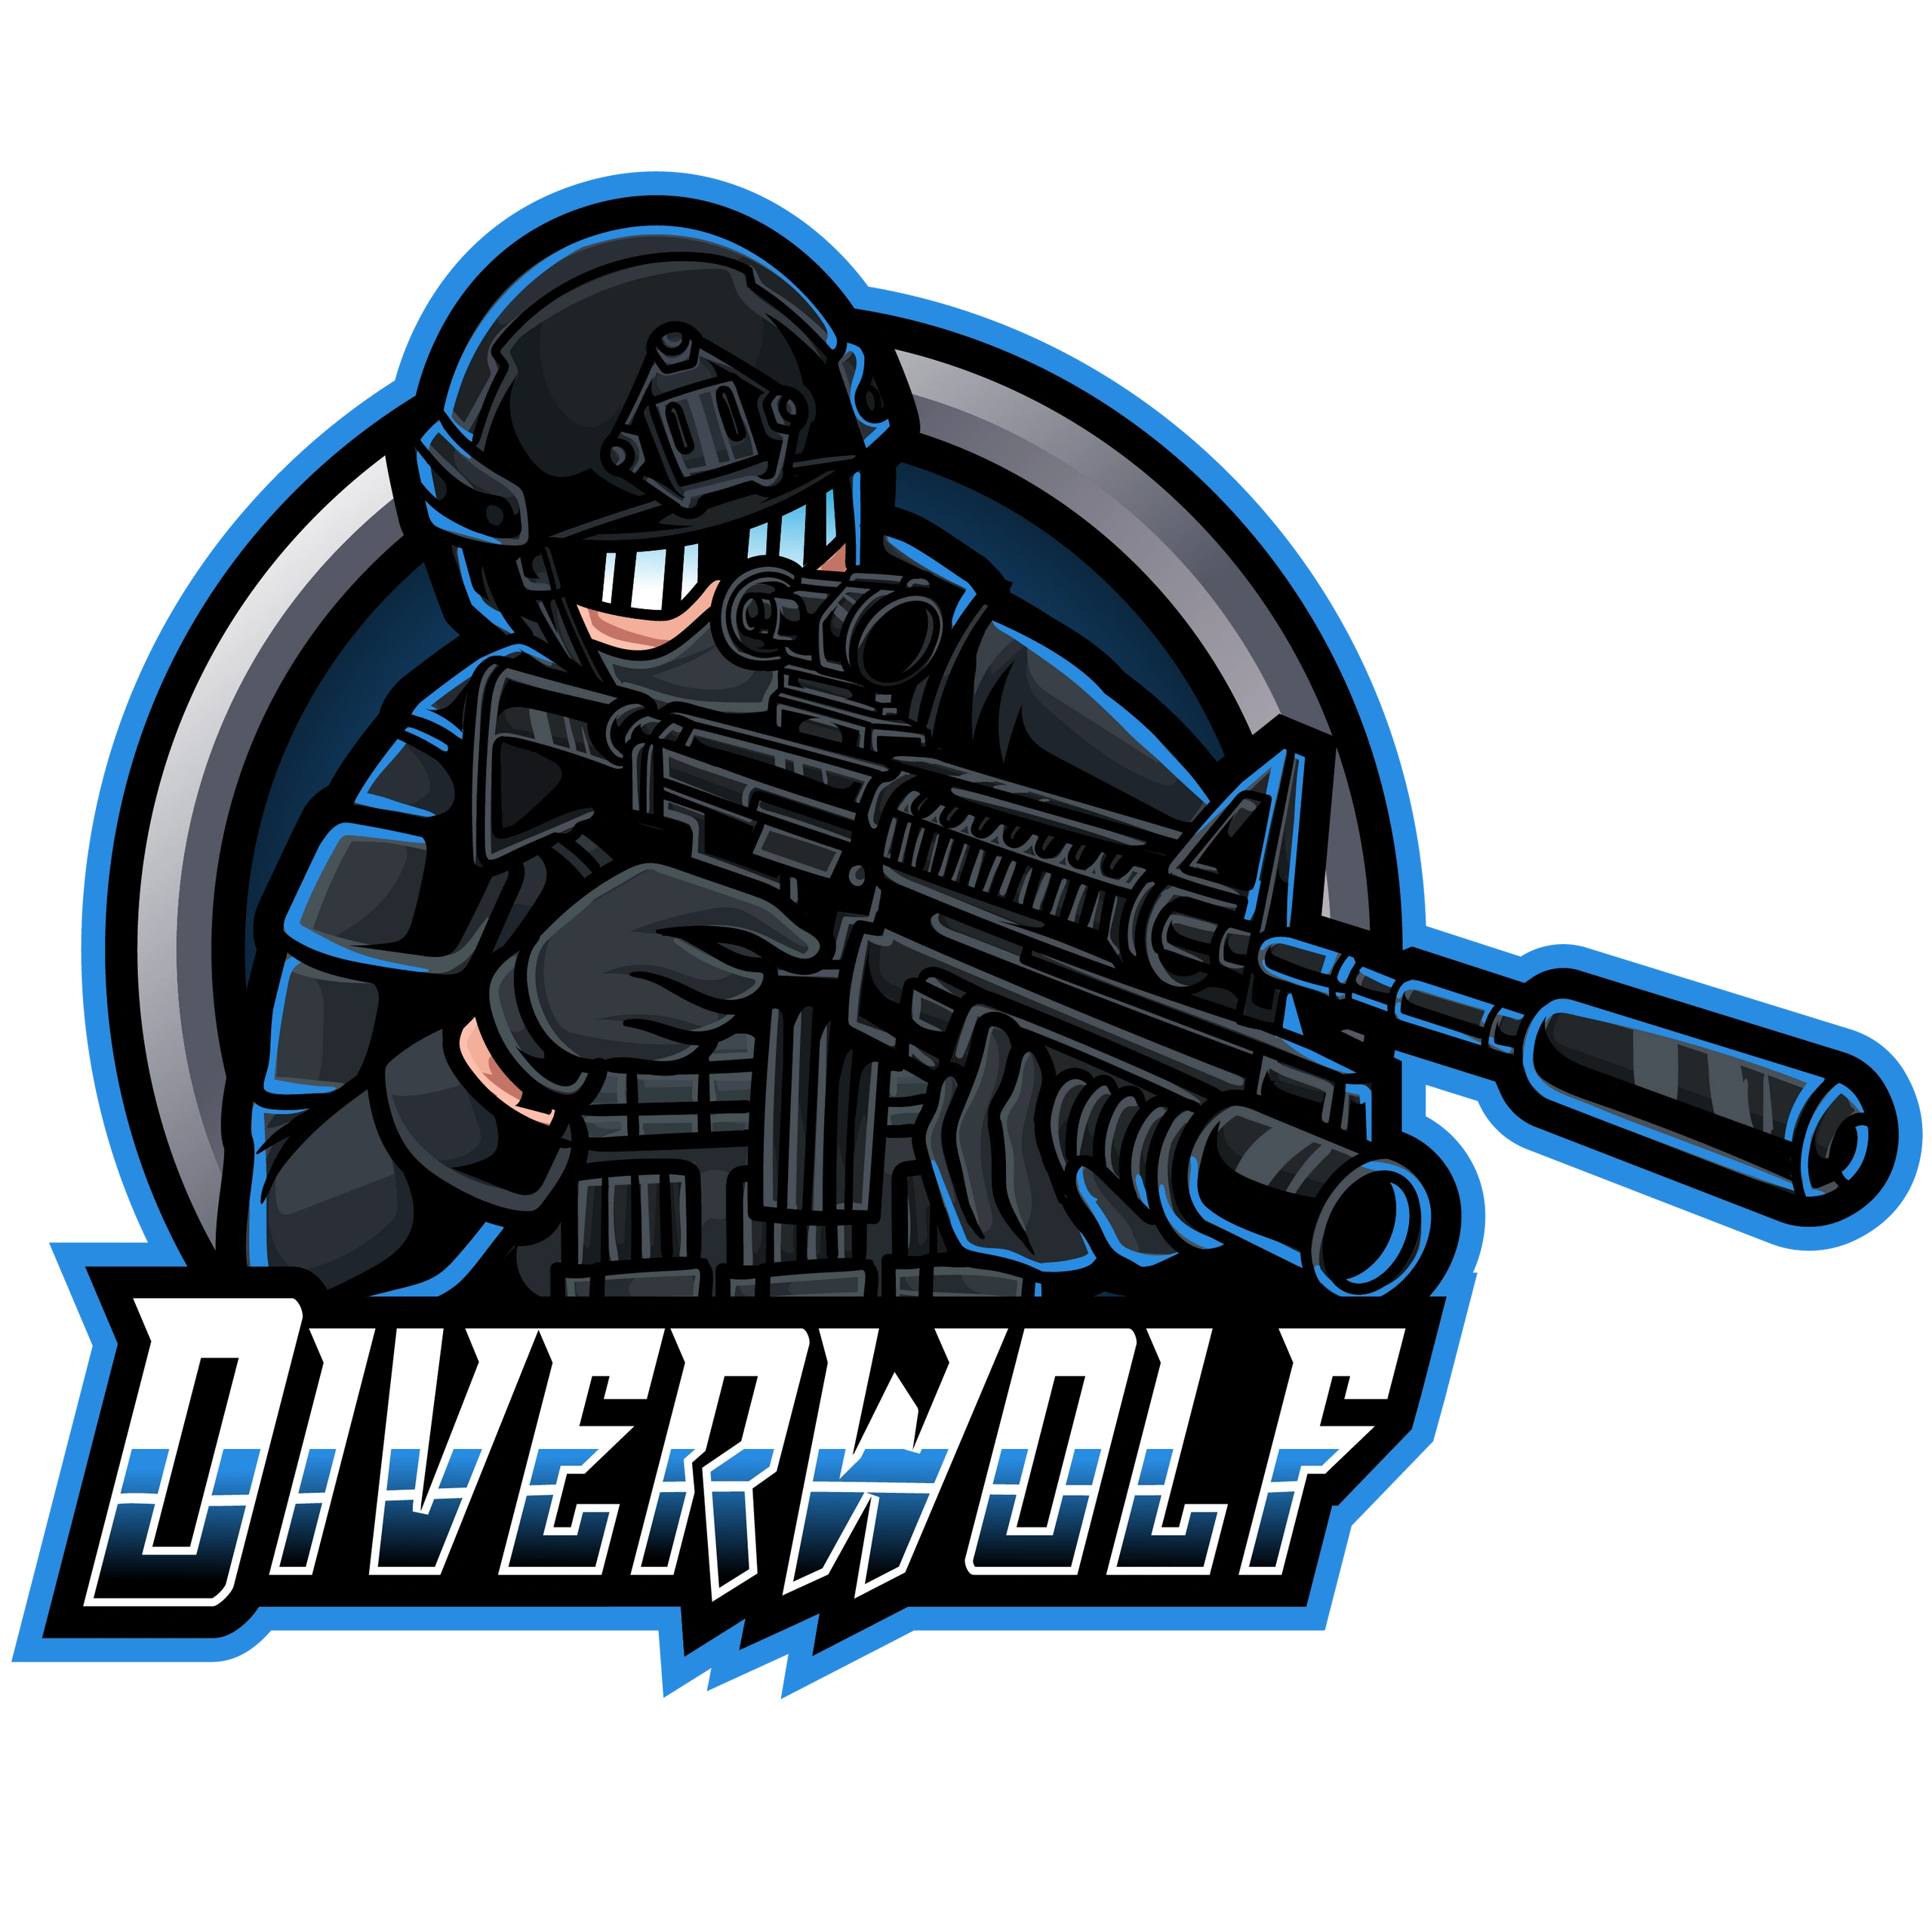 Diverwolf's Logo ©